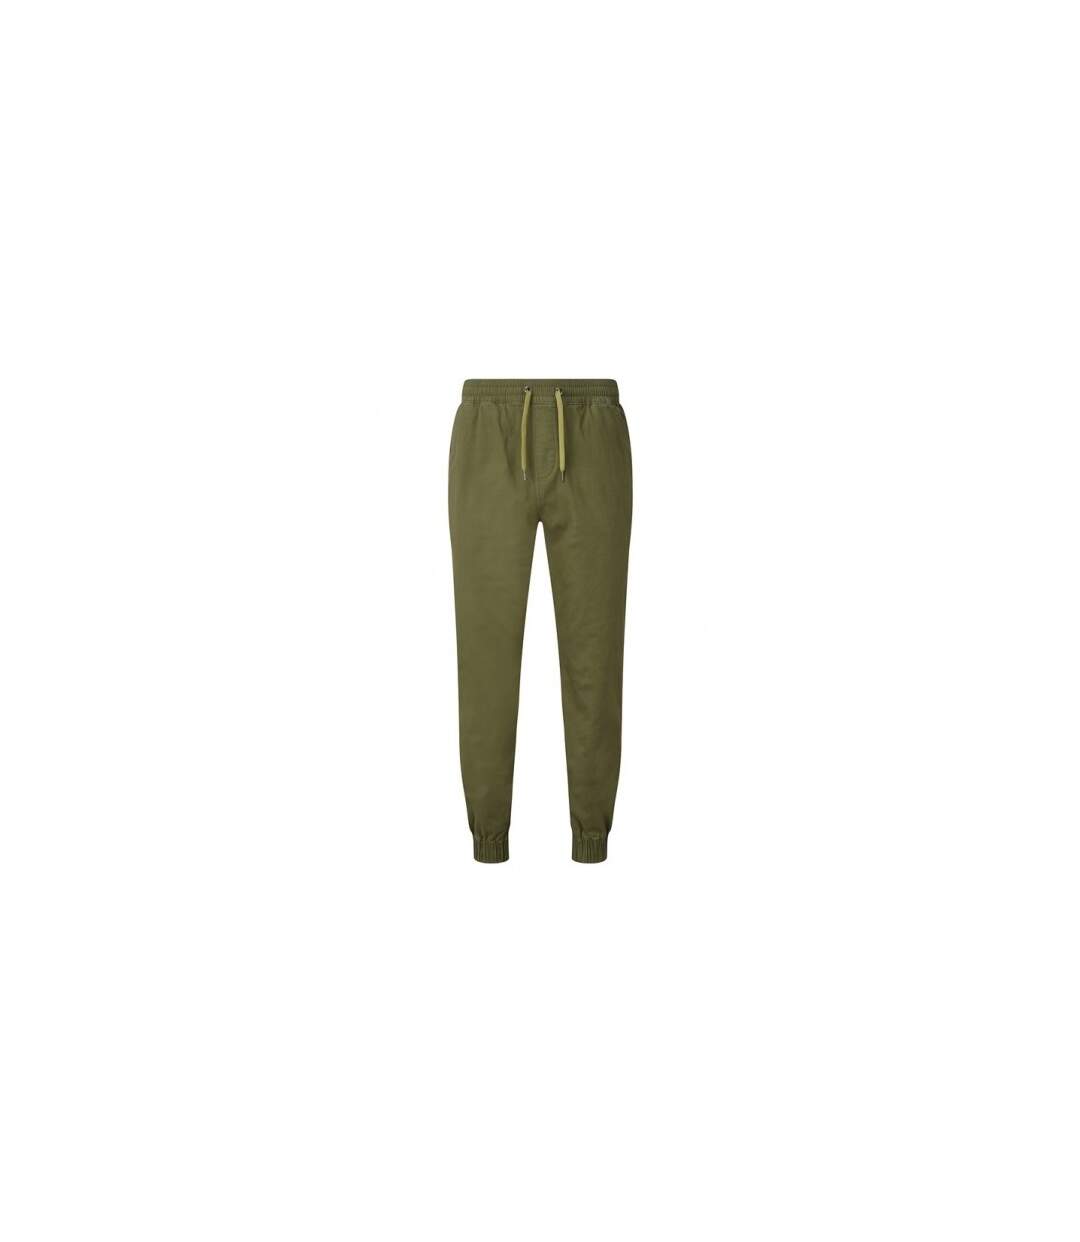 Asquith & Fox - Pantalon de jogging - Homme (Vert kaki) - UTRW7923